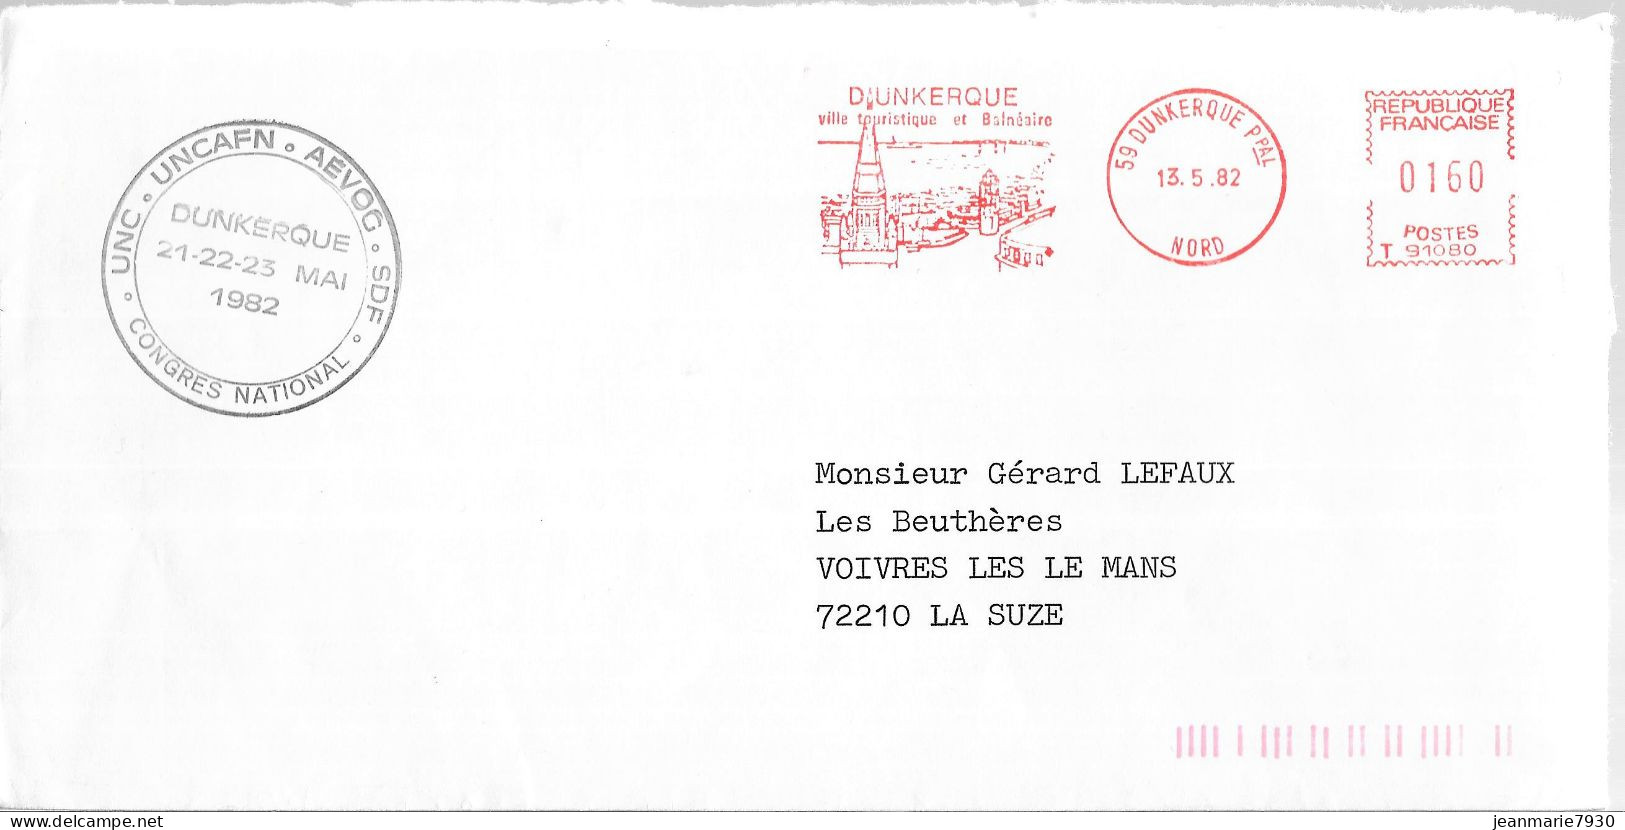 P290 - LETTRE UNCAFN DE DUNKERQUE DU 13/05/82 - FLAMME - Lettres & Documents